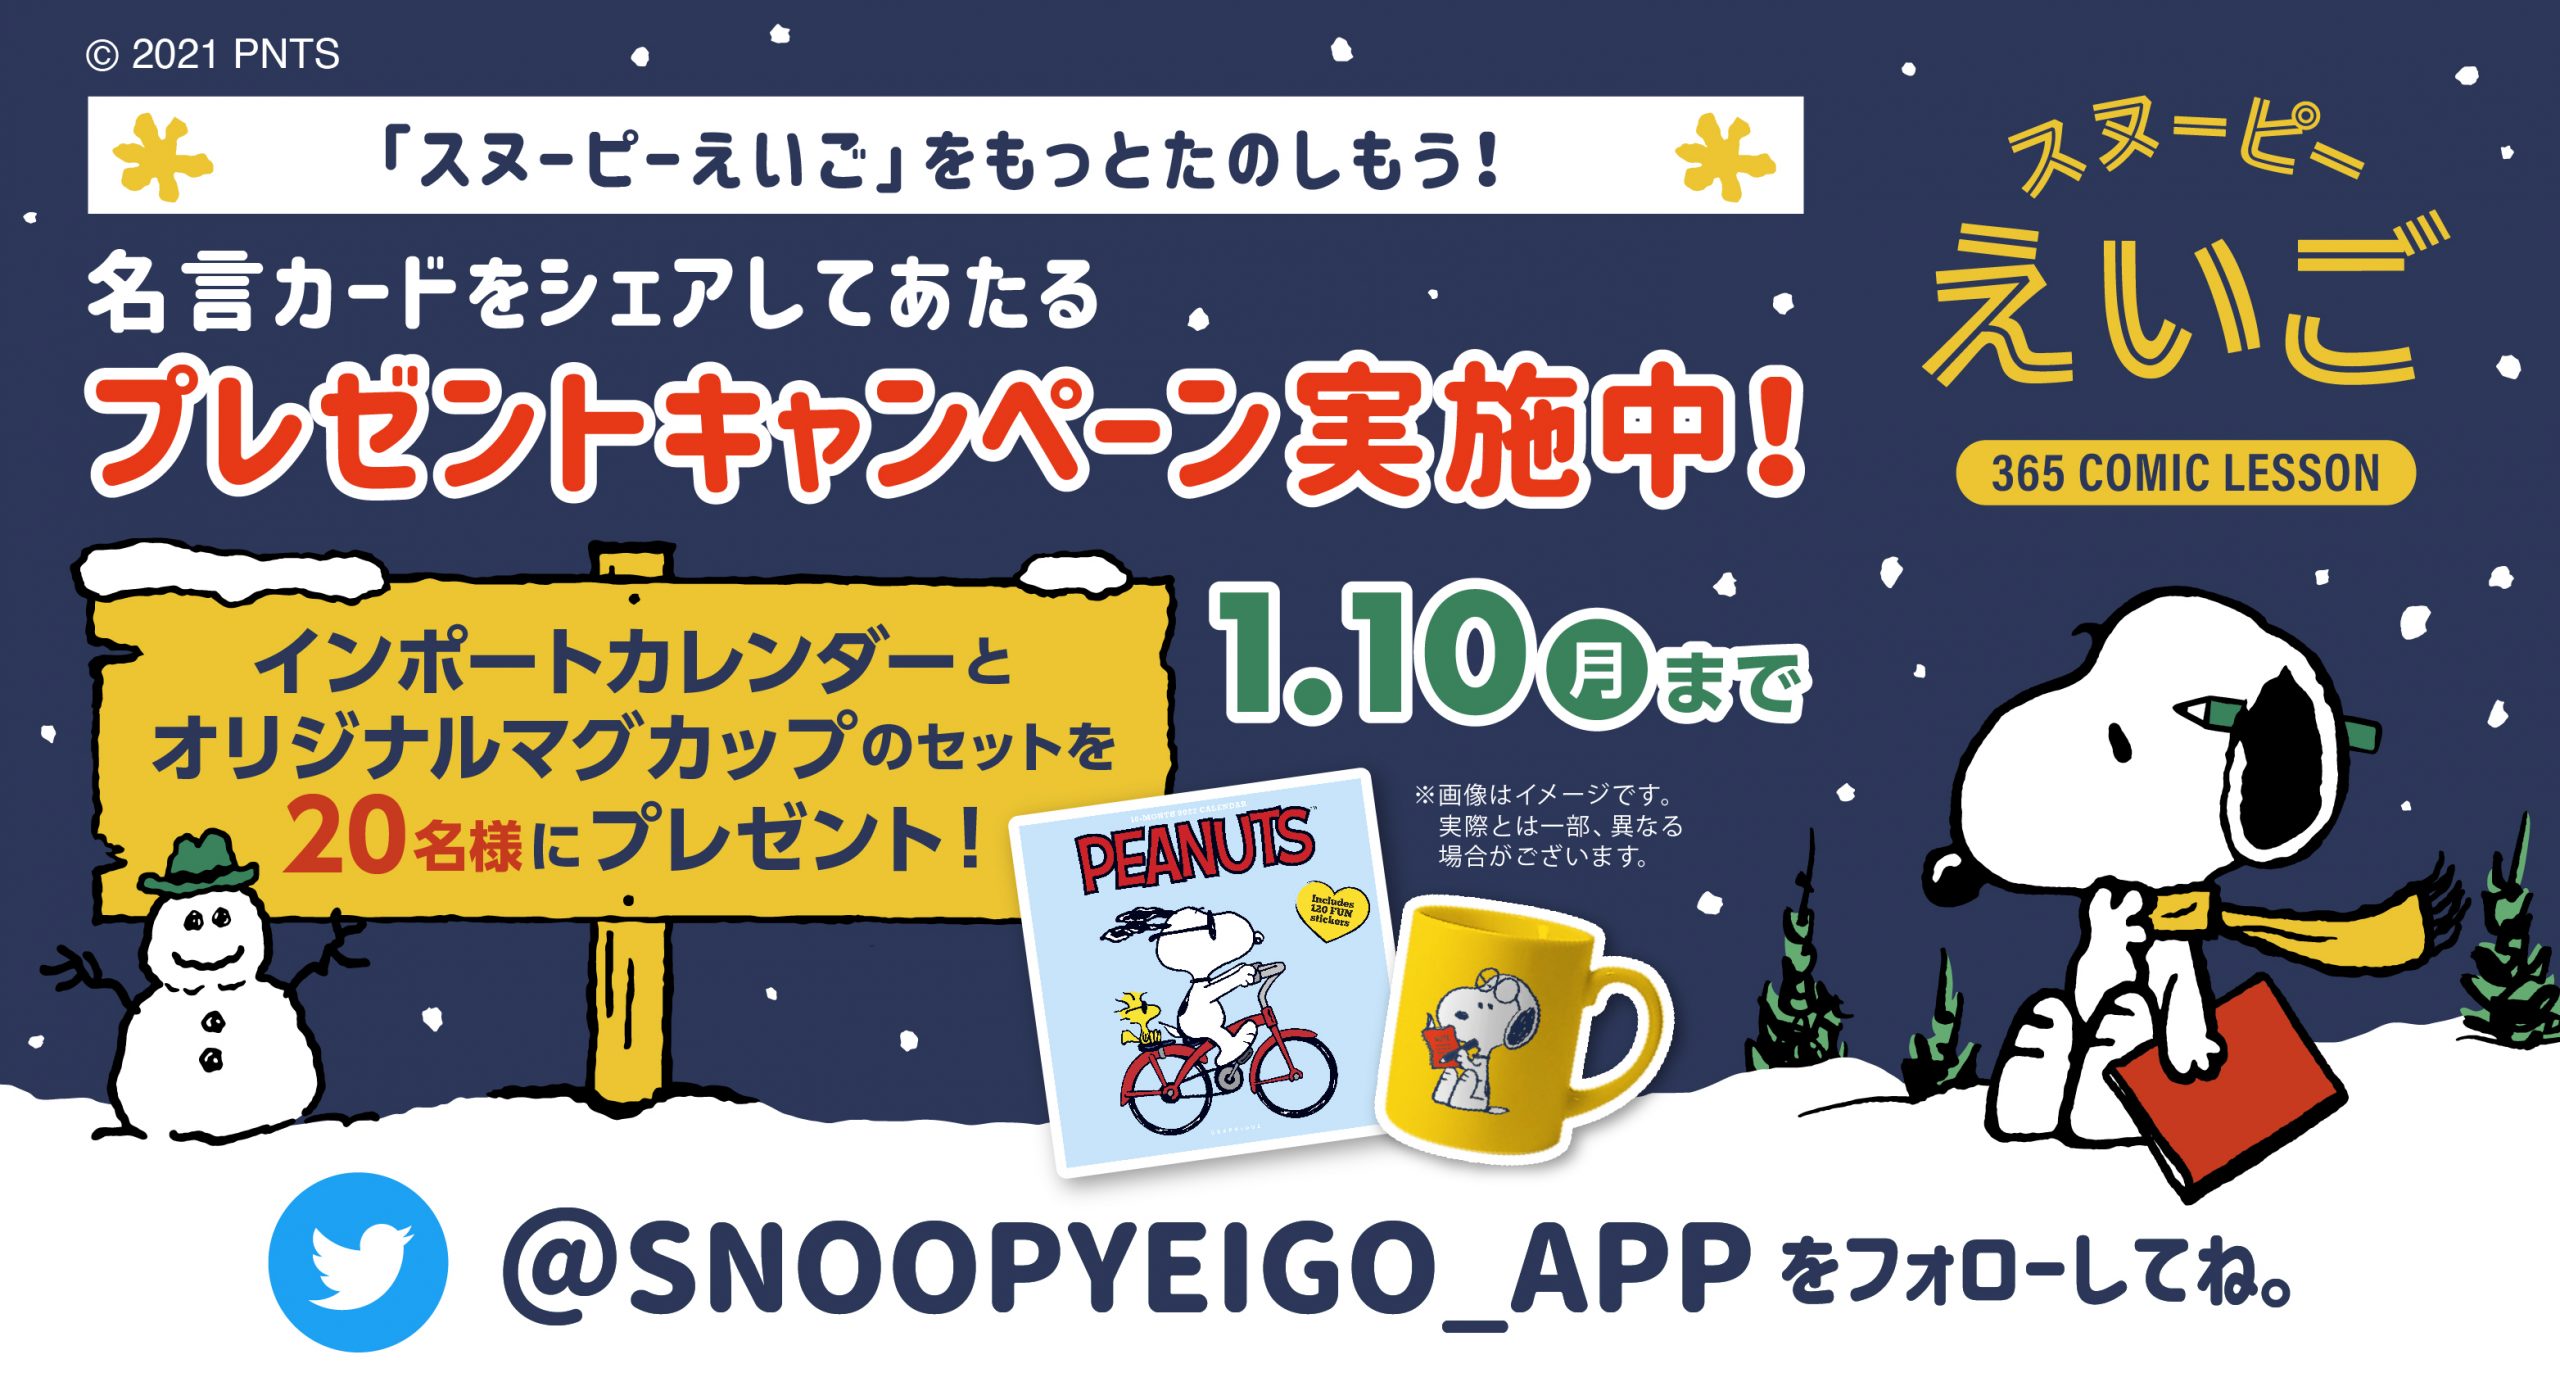 スヌーピーえいご アプリをもっと楽しもう 名言カードを投稿して当たるプレゼントキャンペーン News Snoopy Co Jp 日本のスヌーピー公式サイト